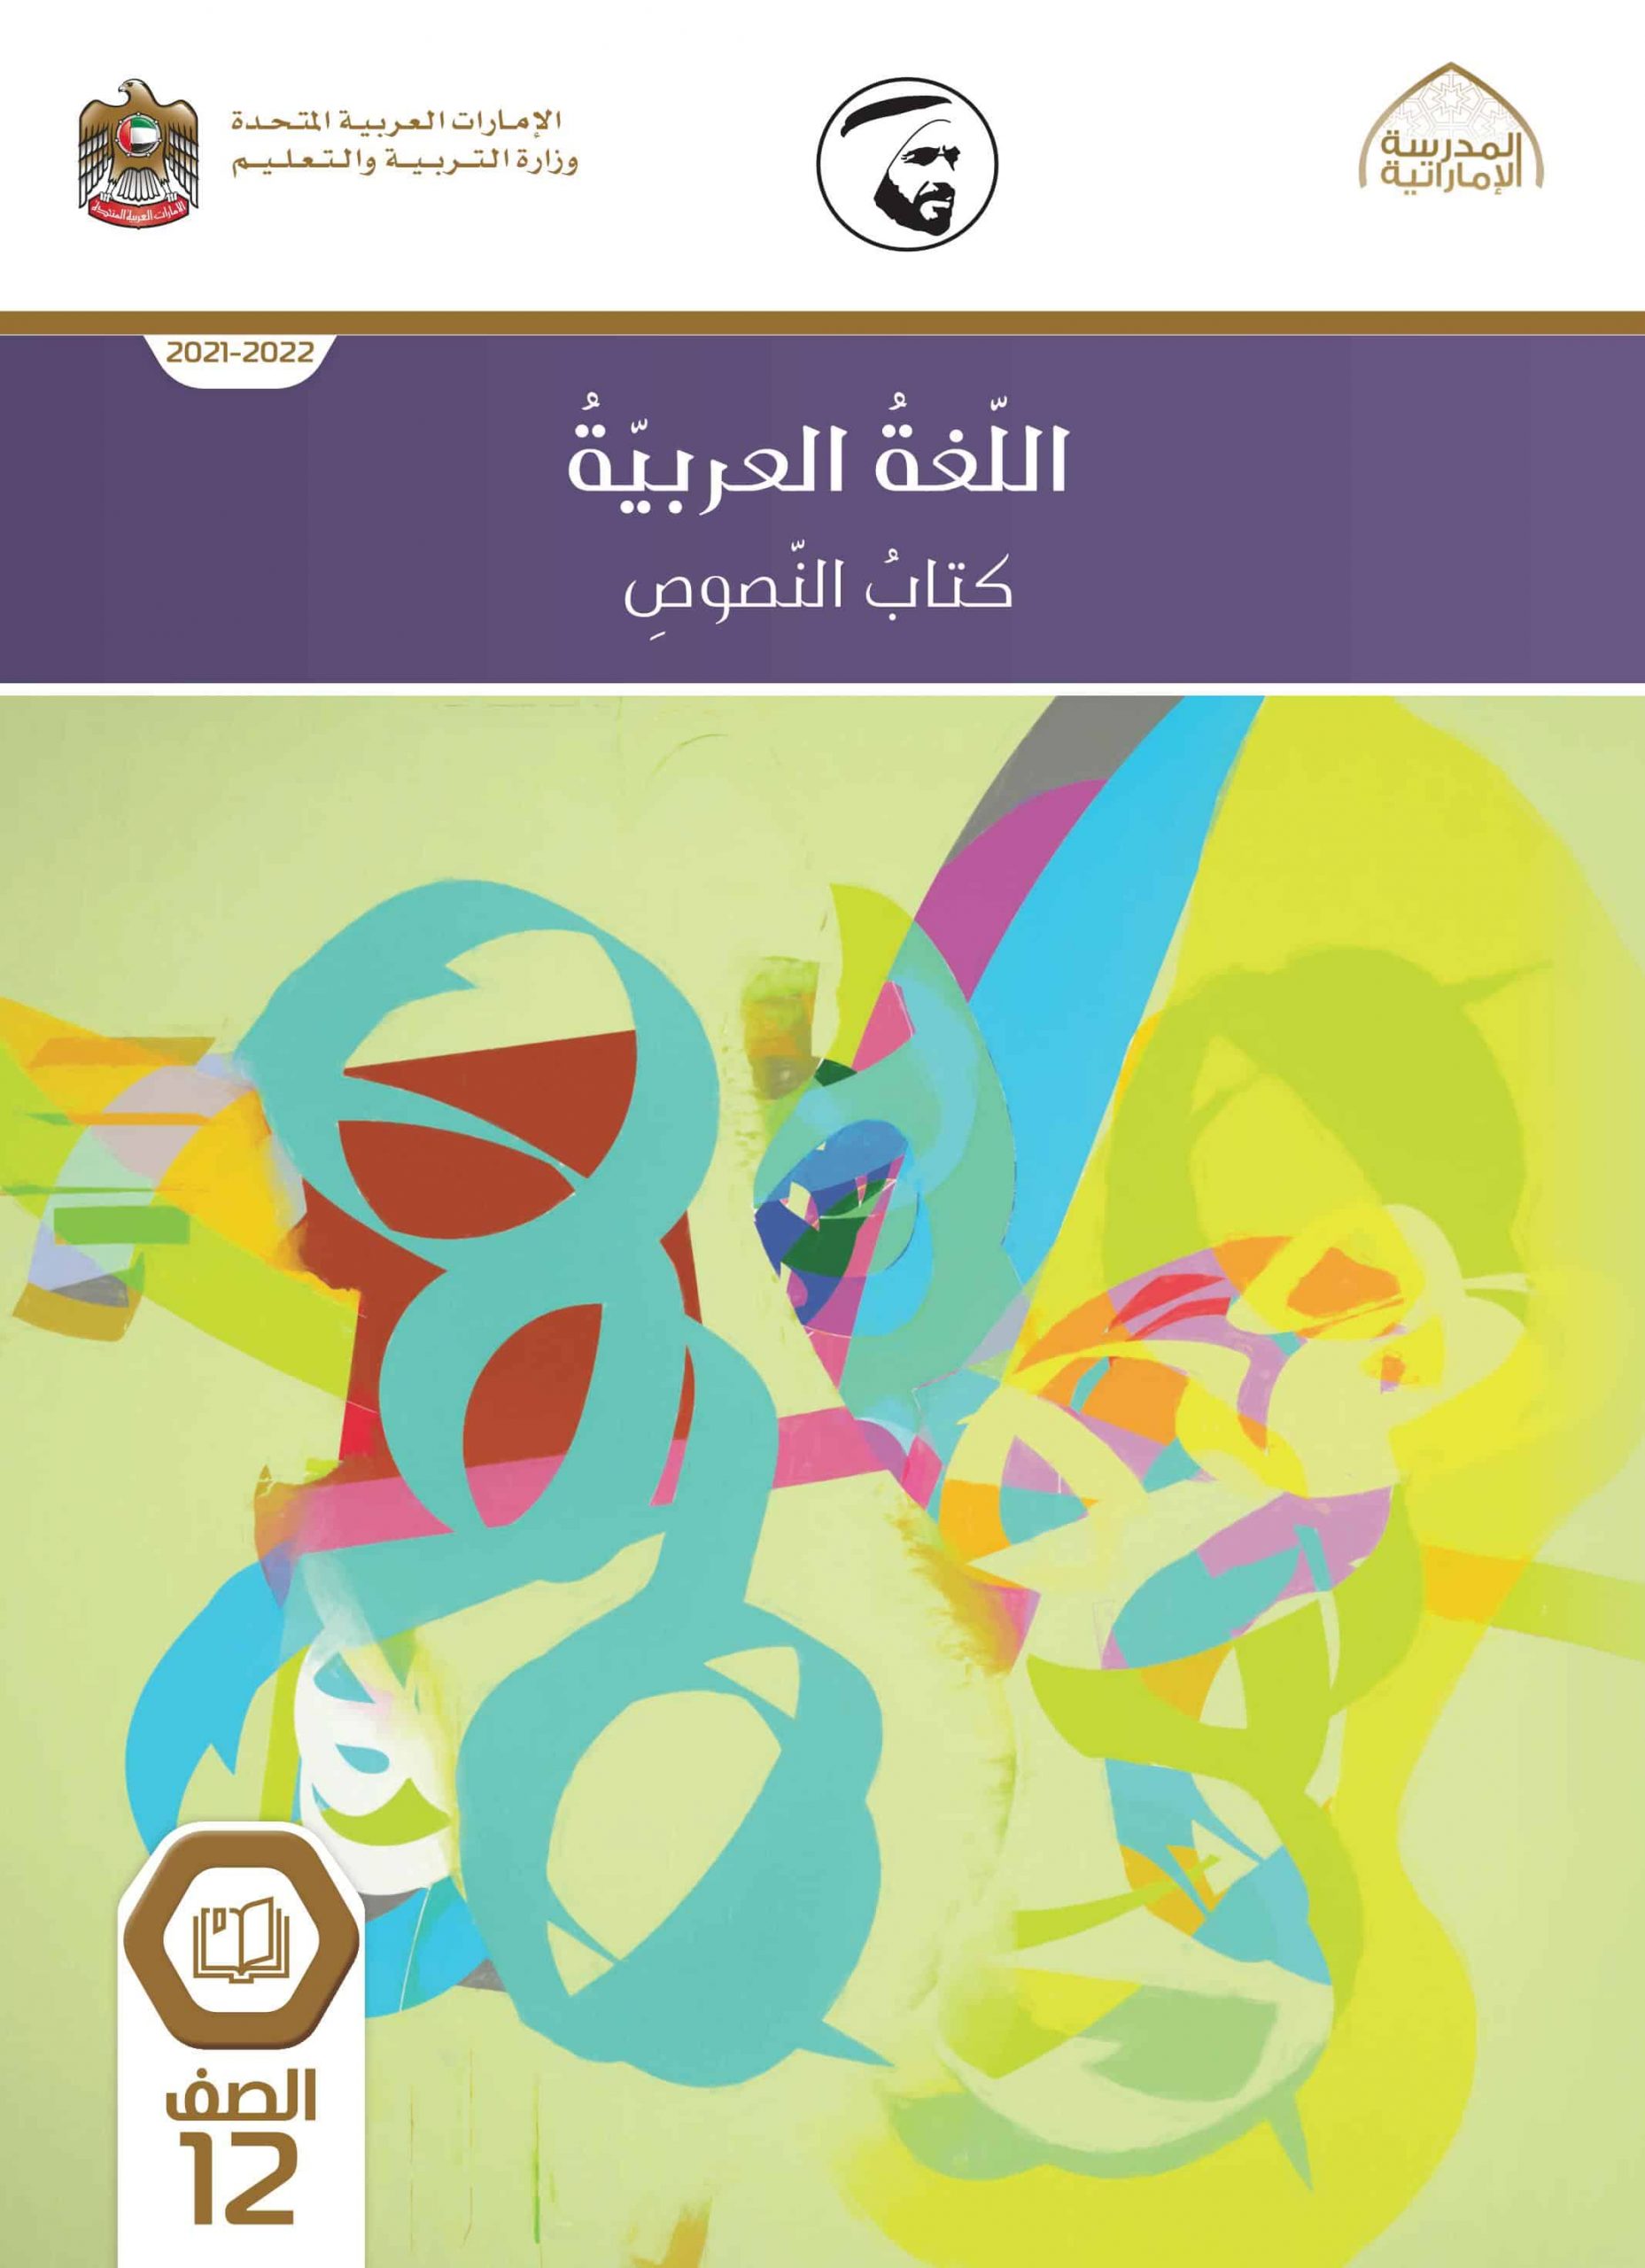 كتاب النصوص الفصل الدراسي الأول 2021-2022 الصف الثاني عشر مادة اللغة العربية